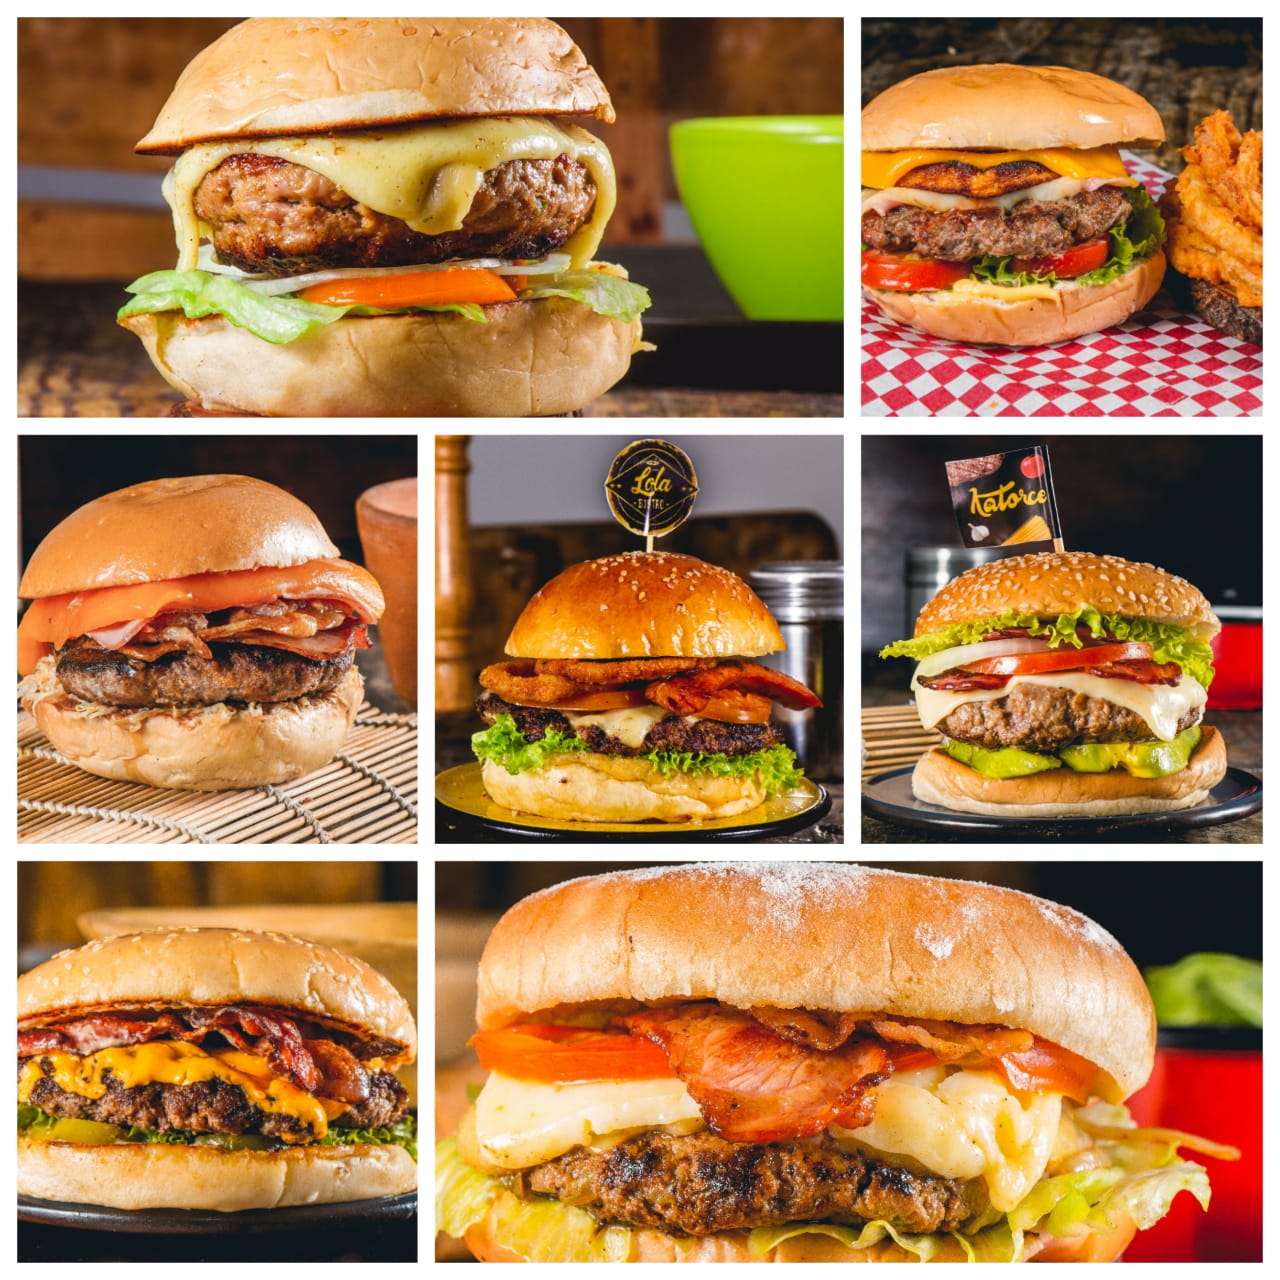 ¿Cuál es su preferida?, 12 negocios de hamburguesas están listos este fin de semana en Malambo para atender a sus clientes a domicilio.